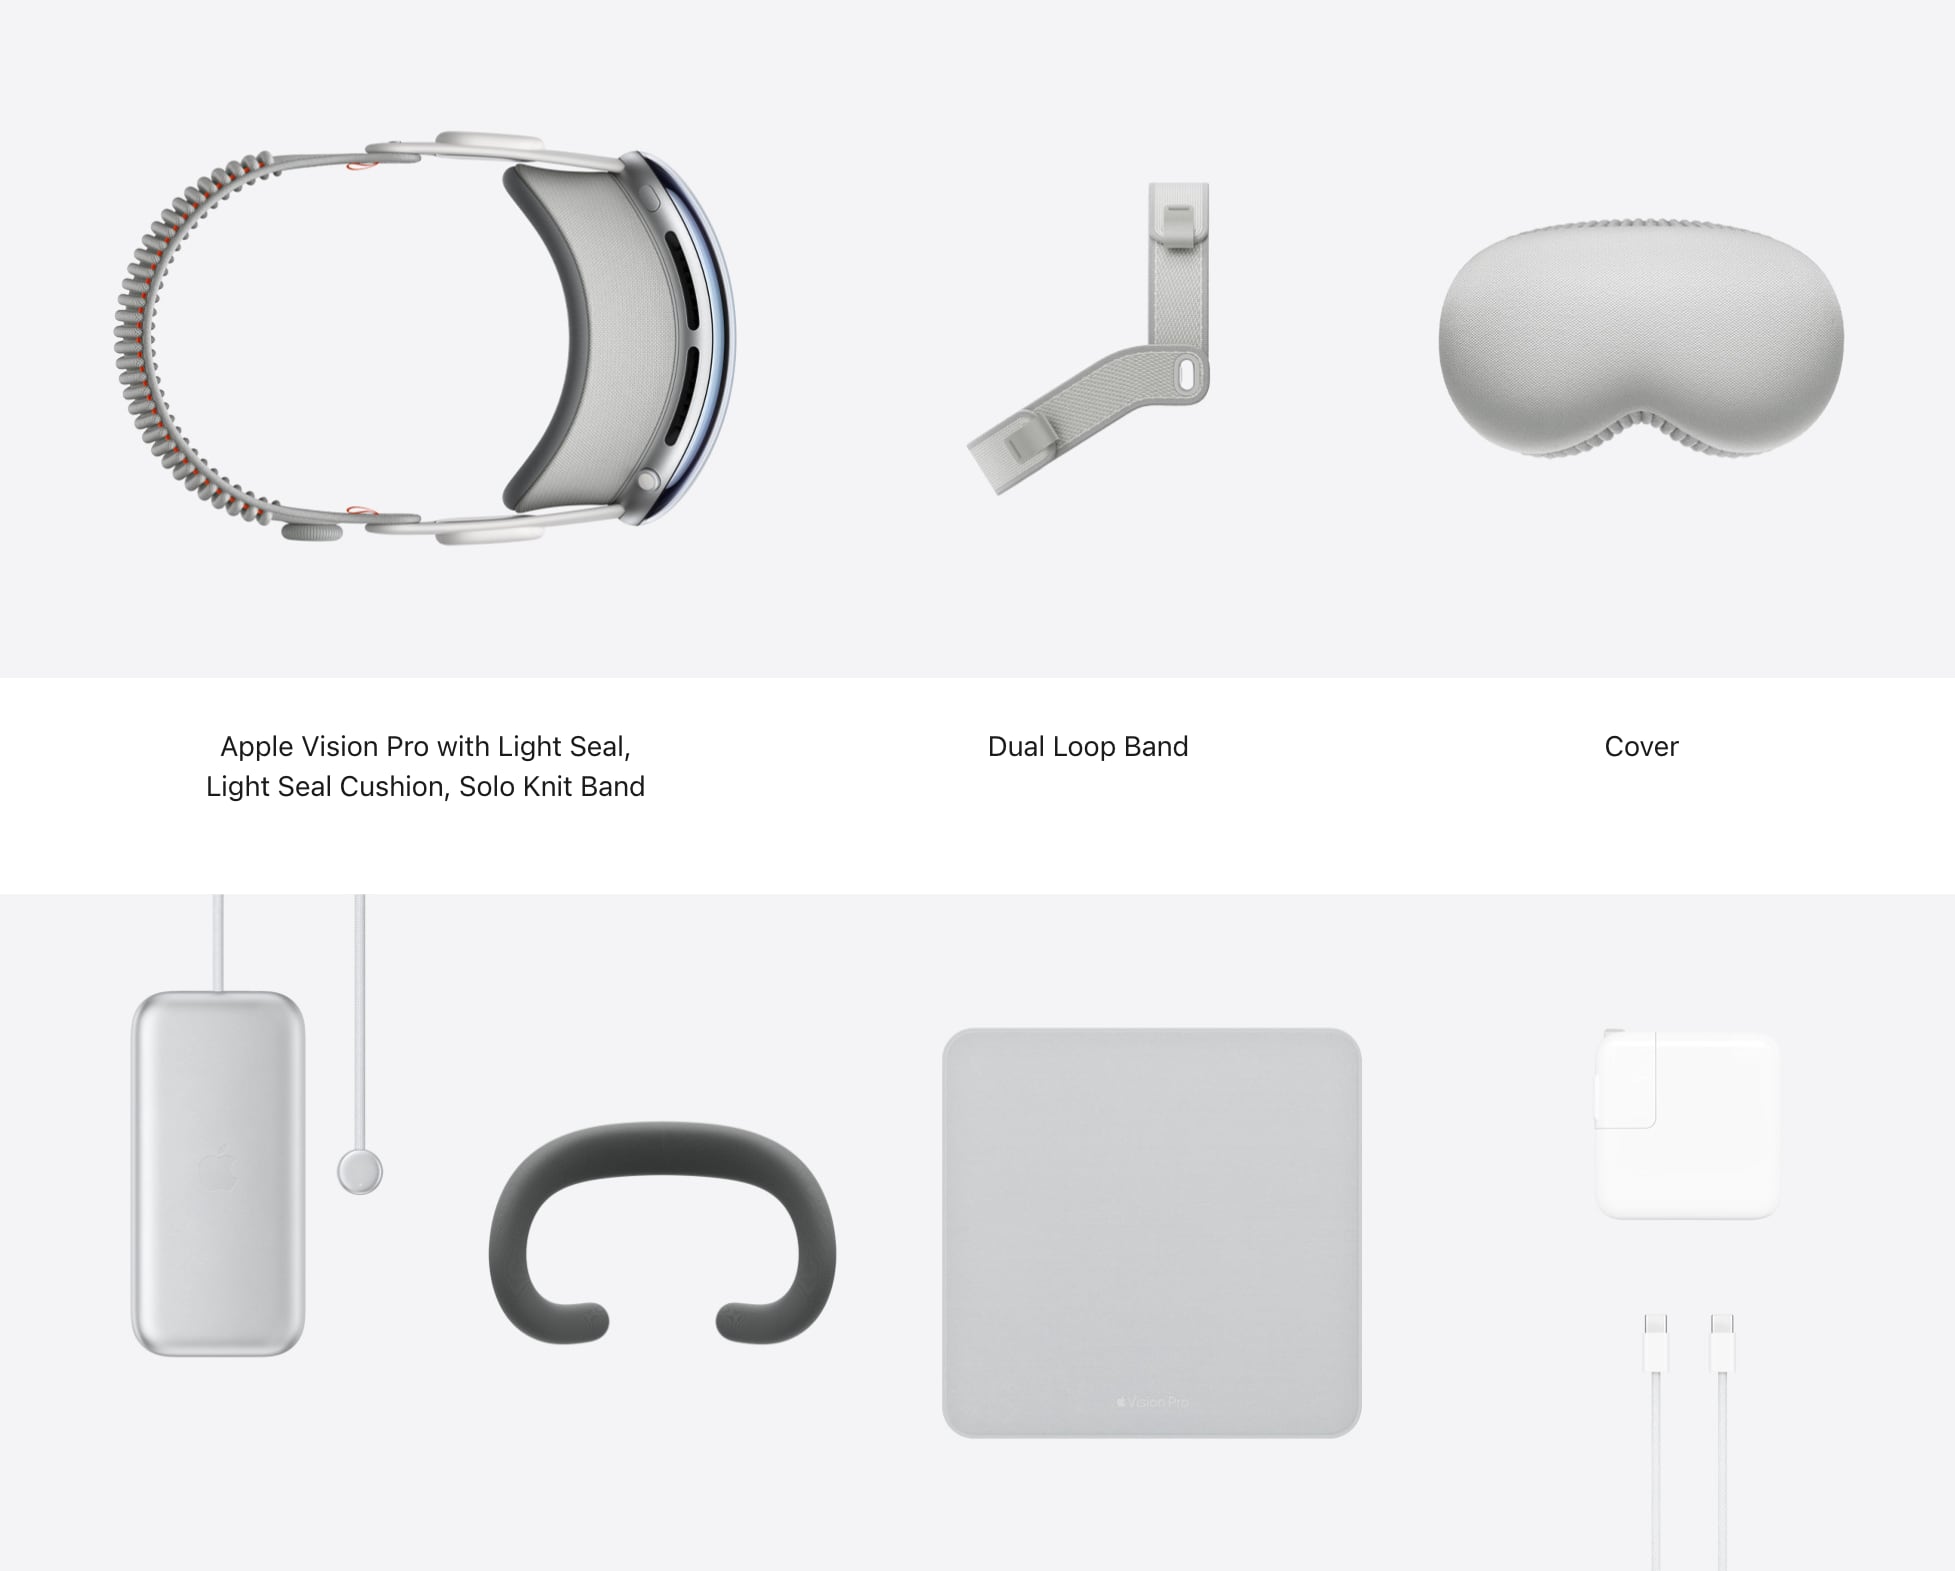 Что за аксессуары есть в комплекте шлема Apple Vision Pro. Например, уникальная тряпочка